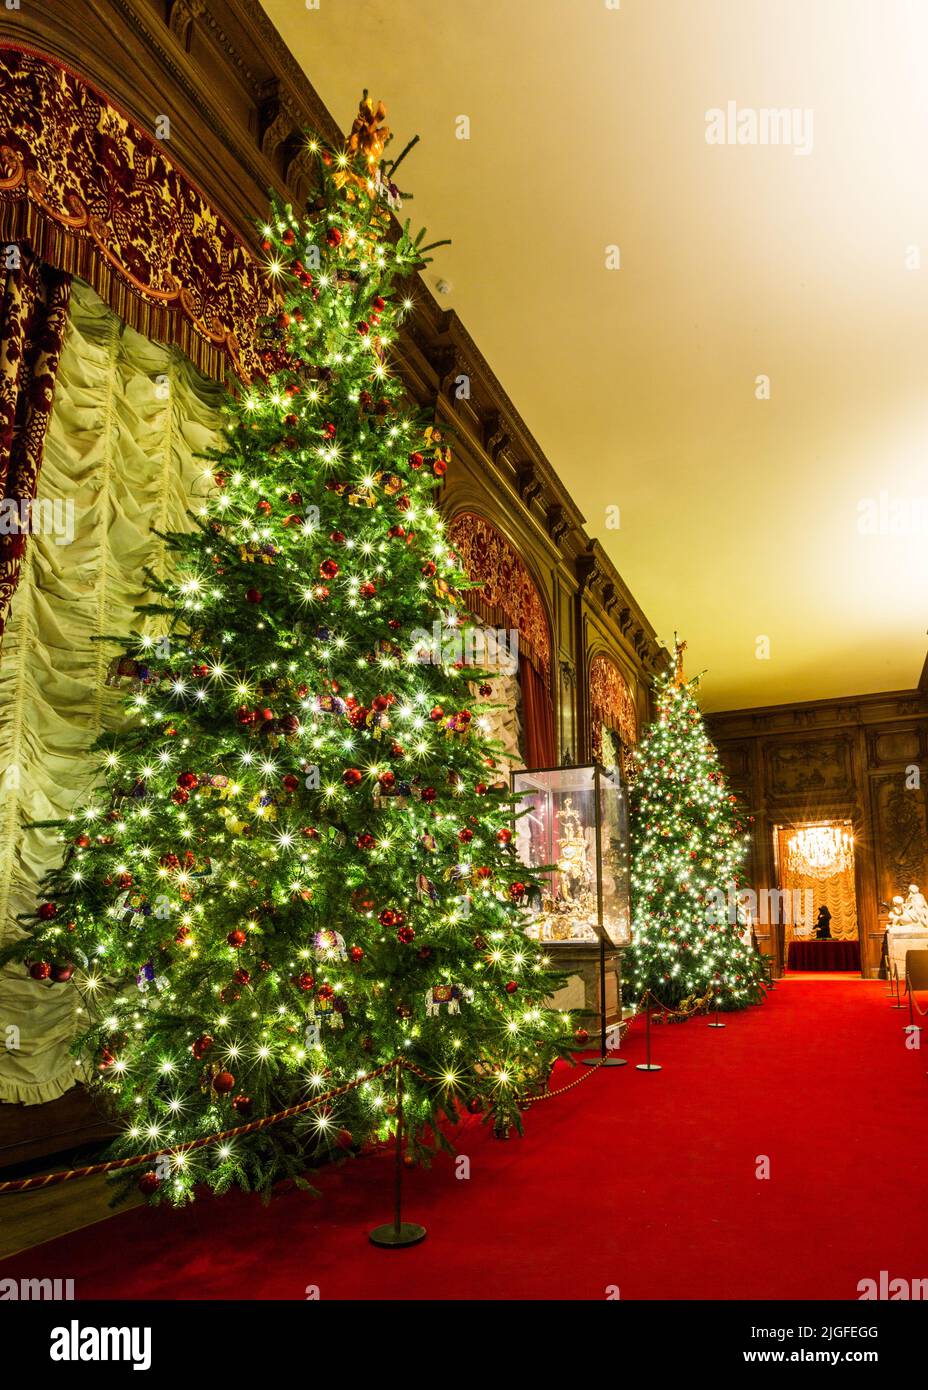 Waddesdon Manor dans Buckinghamshire à la recherche étonnante, a mis en avant pour Noël avec des arbres de Noël, des lumières illuminées et d'autres décorations de fête. Banque D'Images